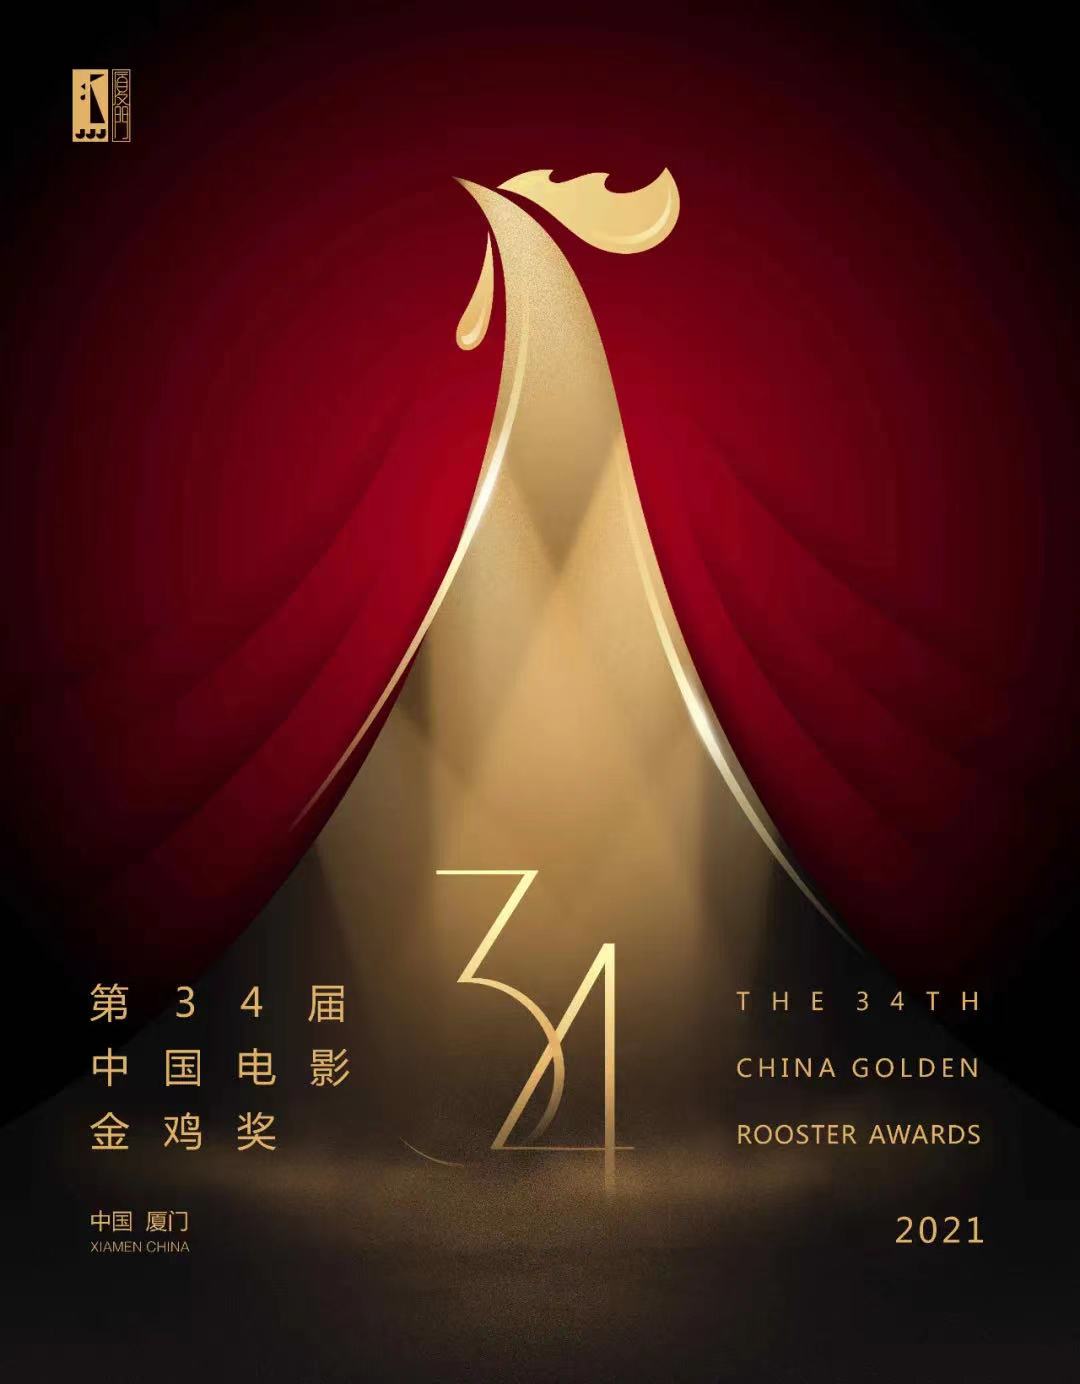 《雄雞凝視》等作品入圍第34屆中國電影金雞獎海報設計大賽-圖5